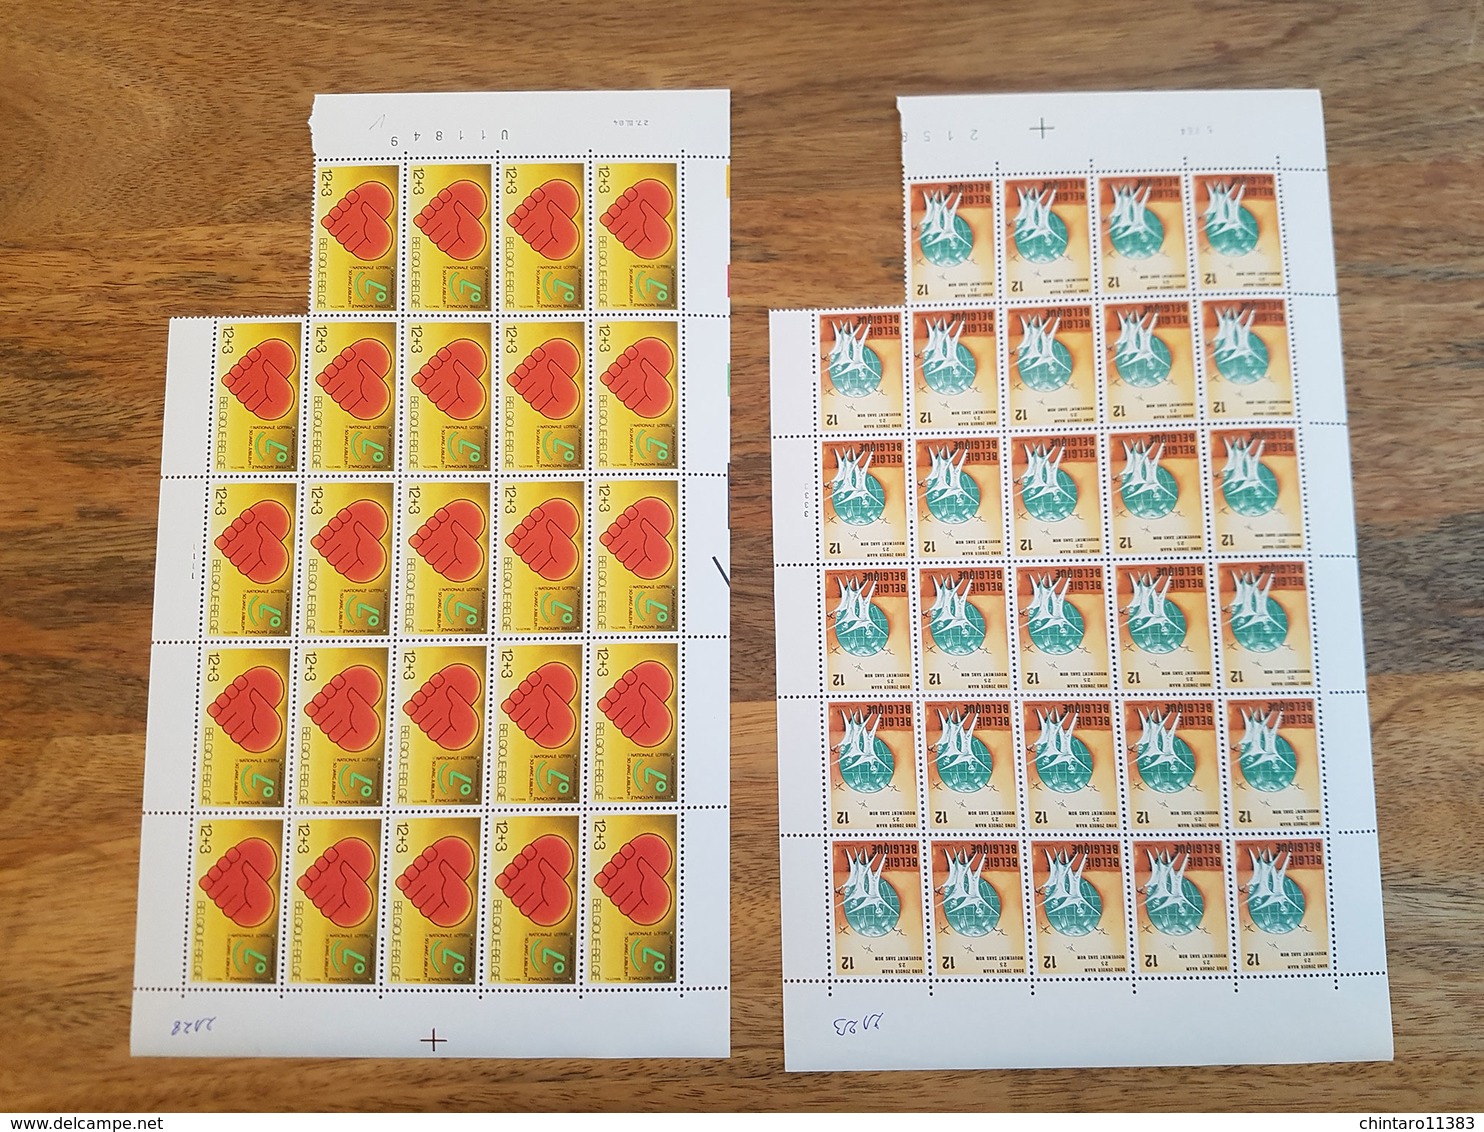 Lot feuilles incomplètes (manque 1) de timbres Belgique - Année 1984